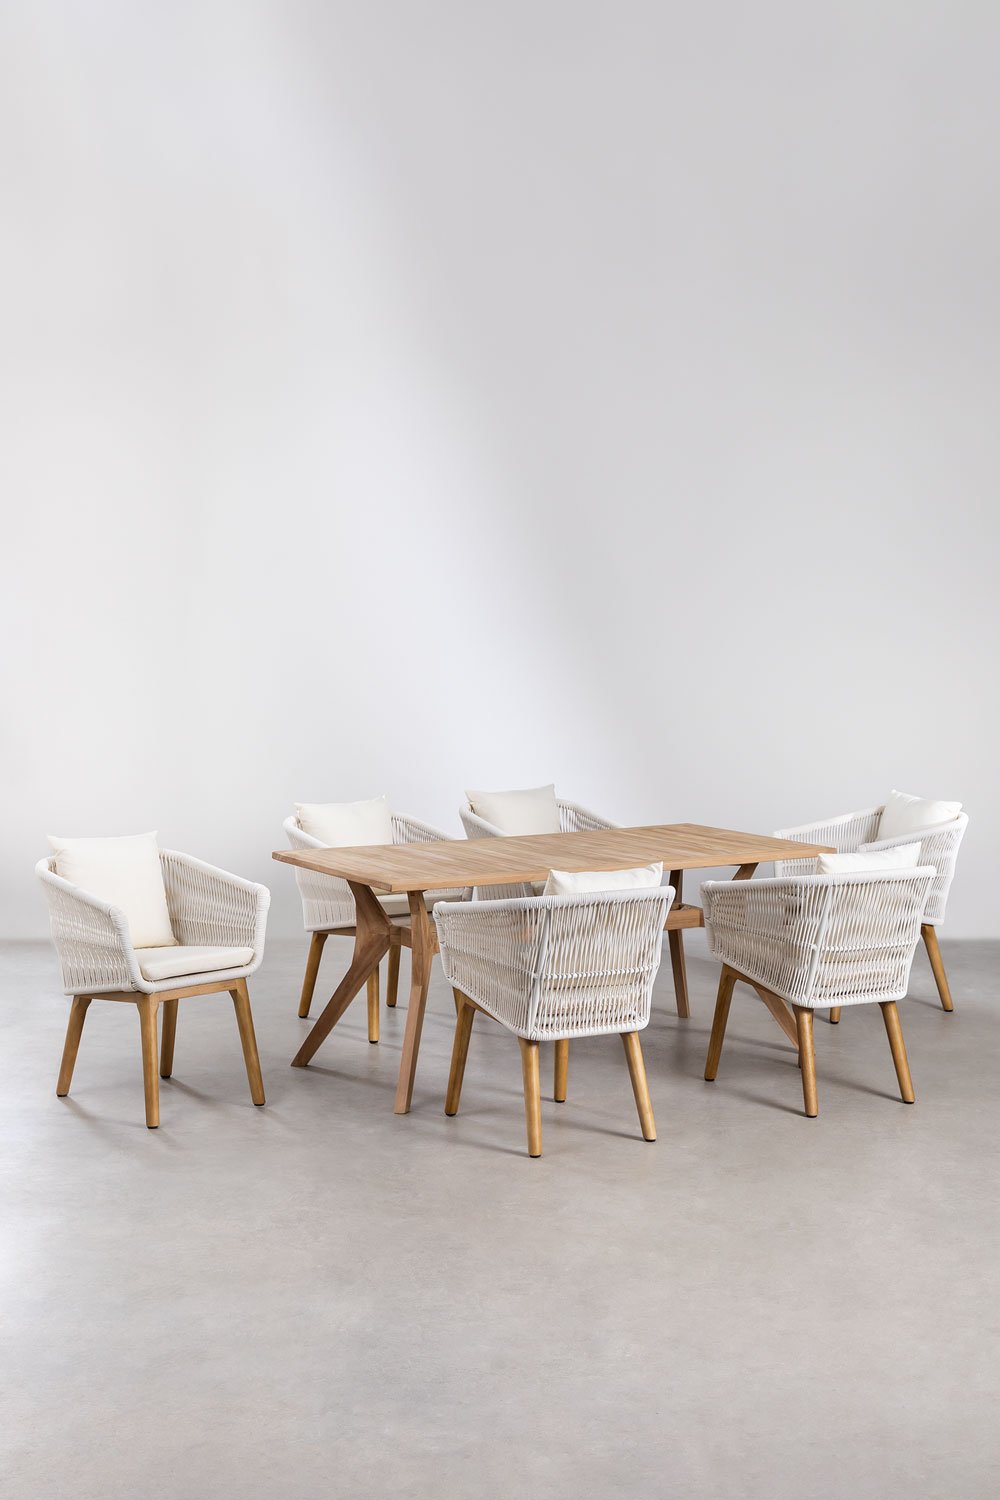 Yolen rechthoekige teakhouten tafelset (180x90 cm) en 6 Barker eetkamerstoelen, galerij beeld 1